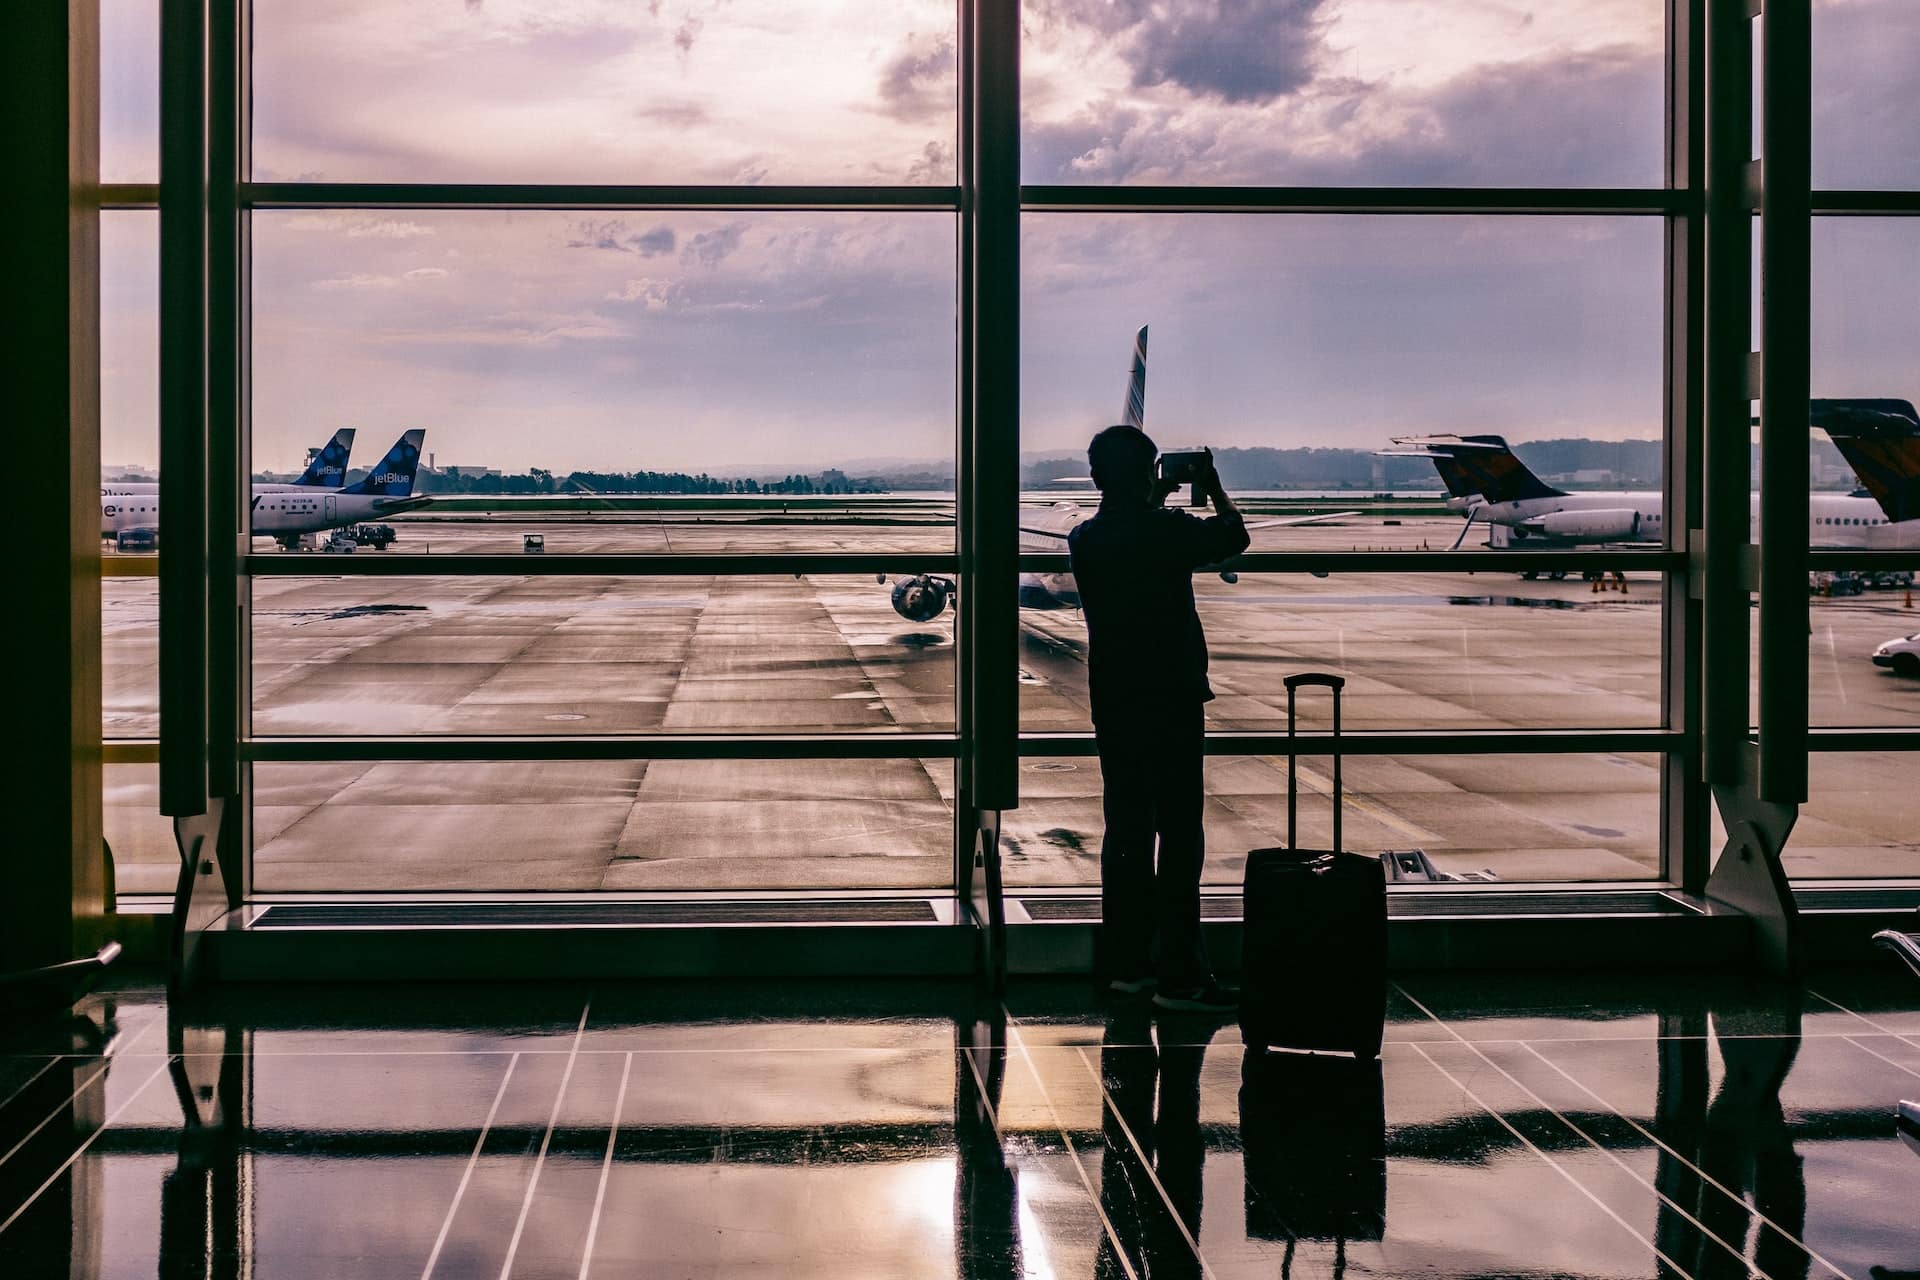 a imagem mostra um homem tirando foto da paisagem de um aeroporto, marcando o inicio de sua carreira internacional